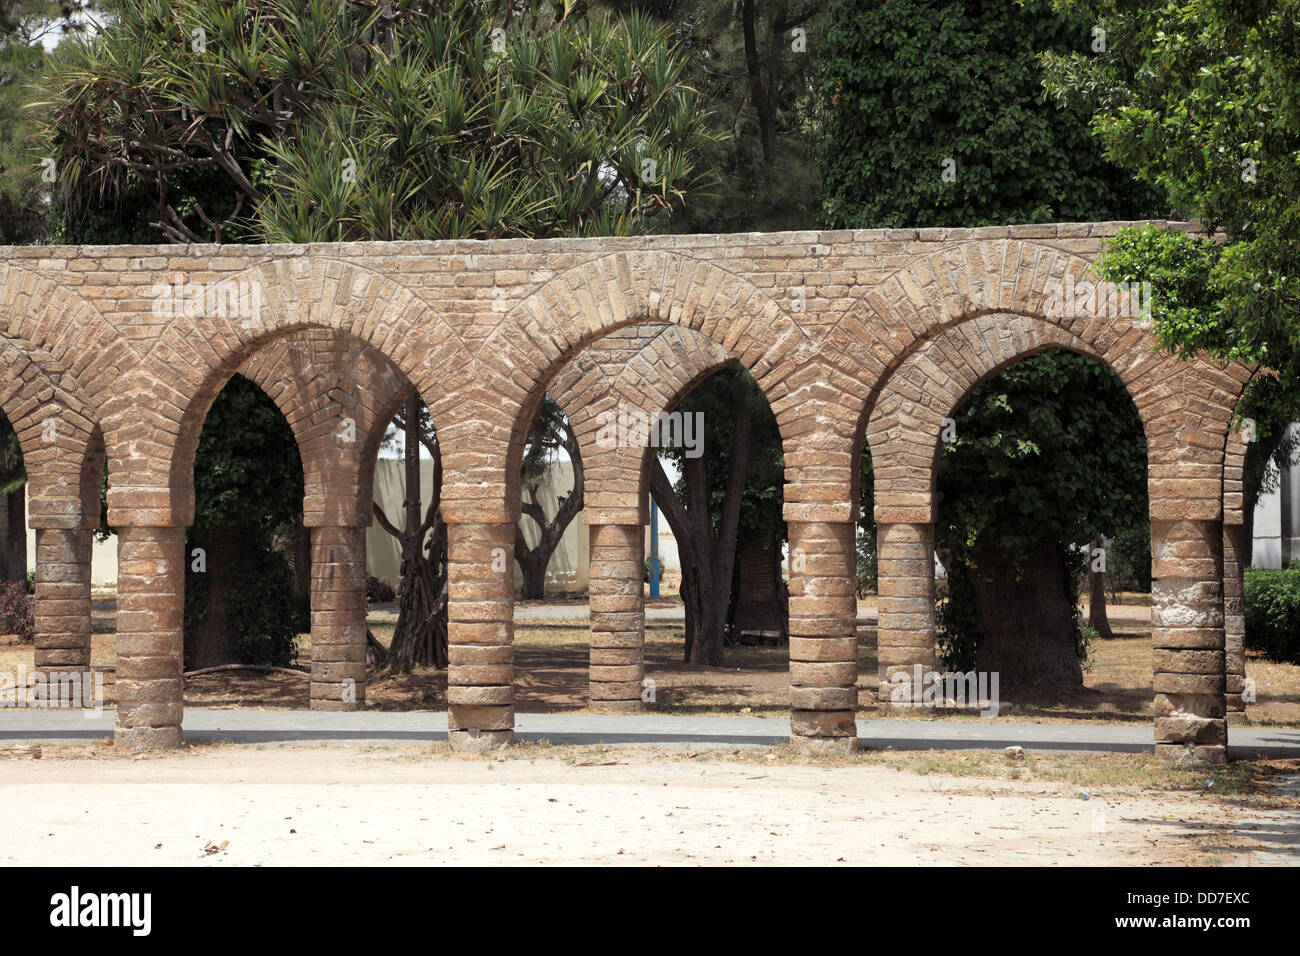 Ancient archway in Casablanca, Morocco Stock Photo